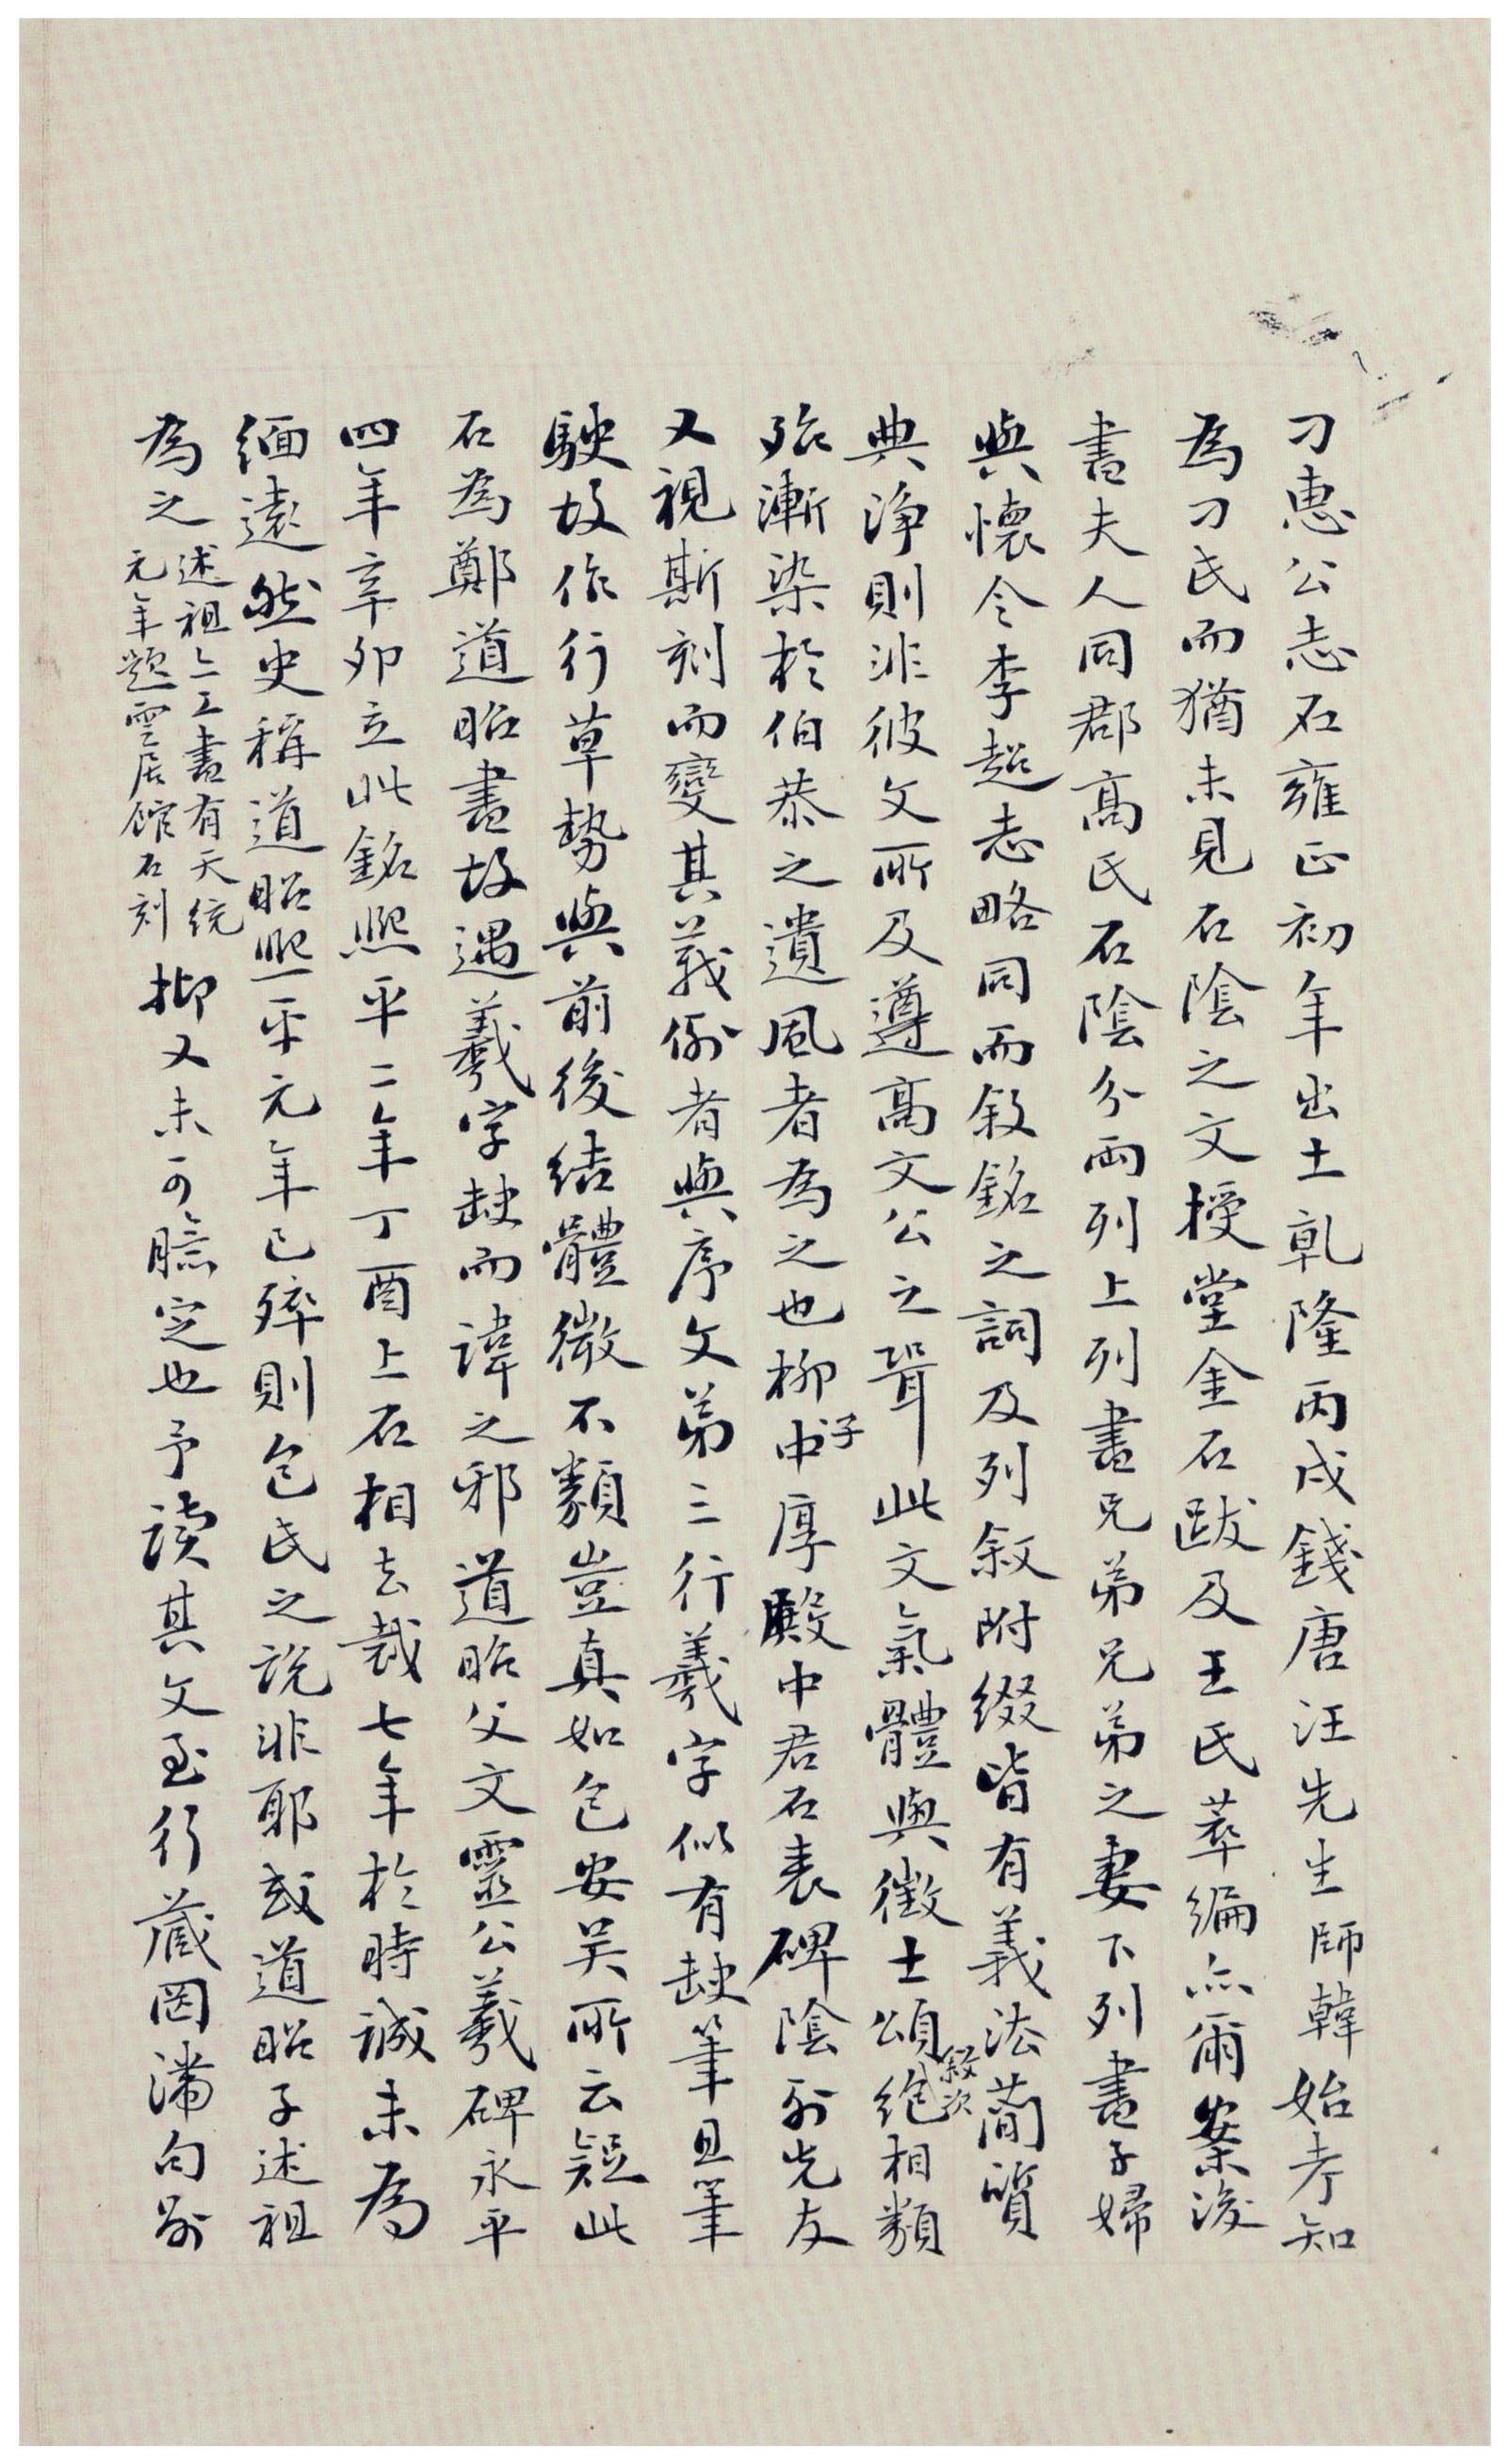 北魏《刁遵墓志》题签与题跋(图15)